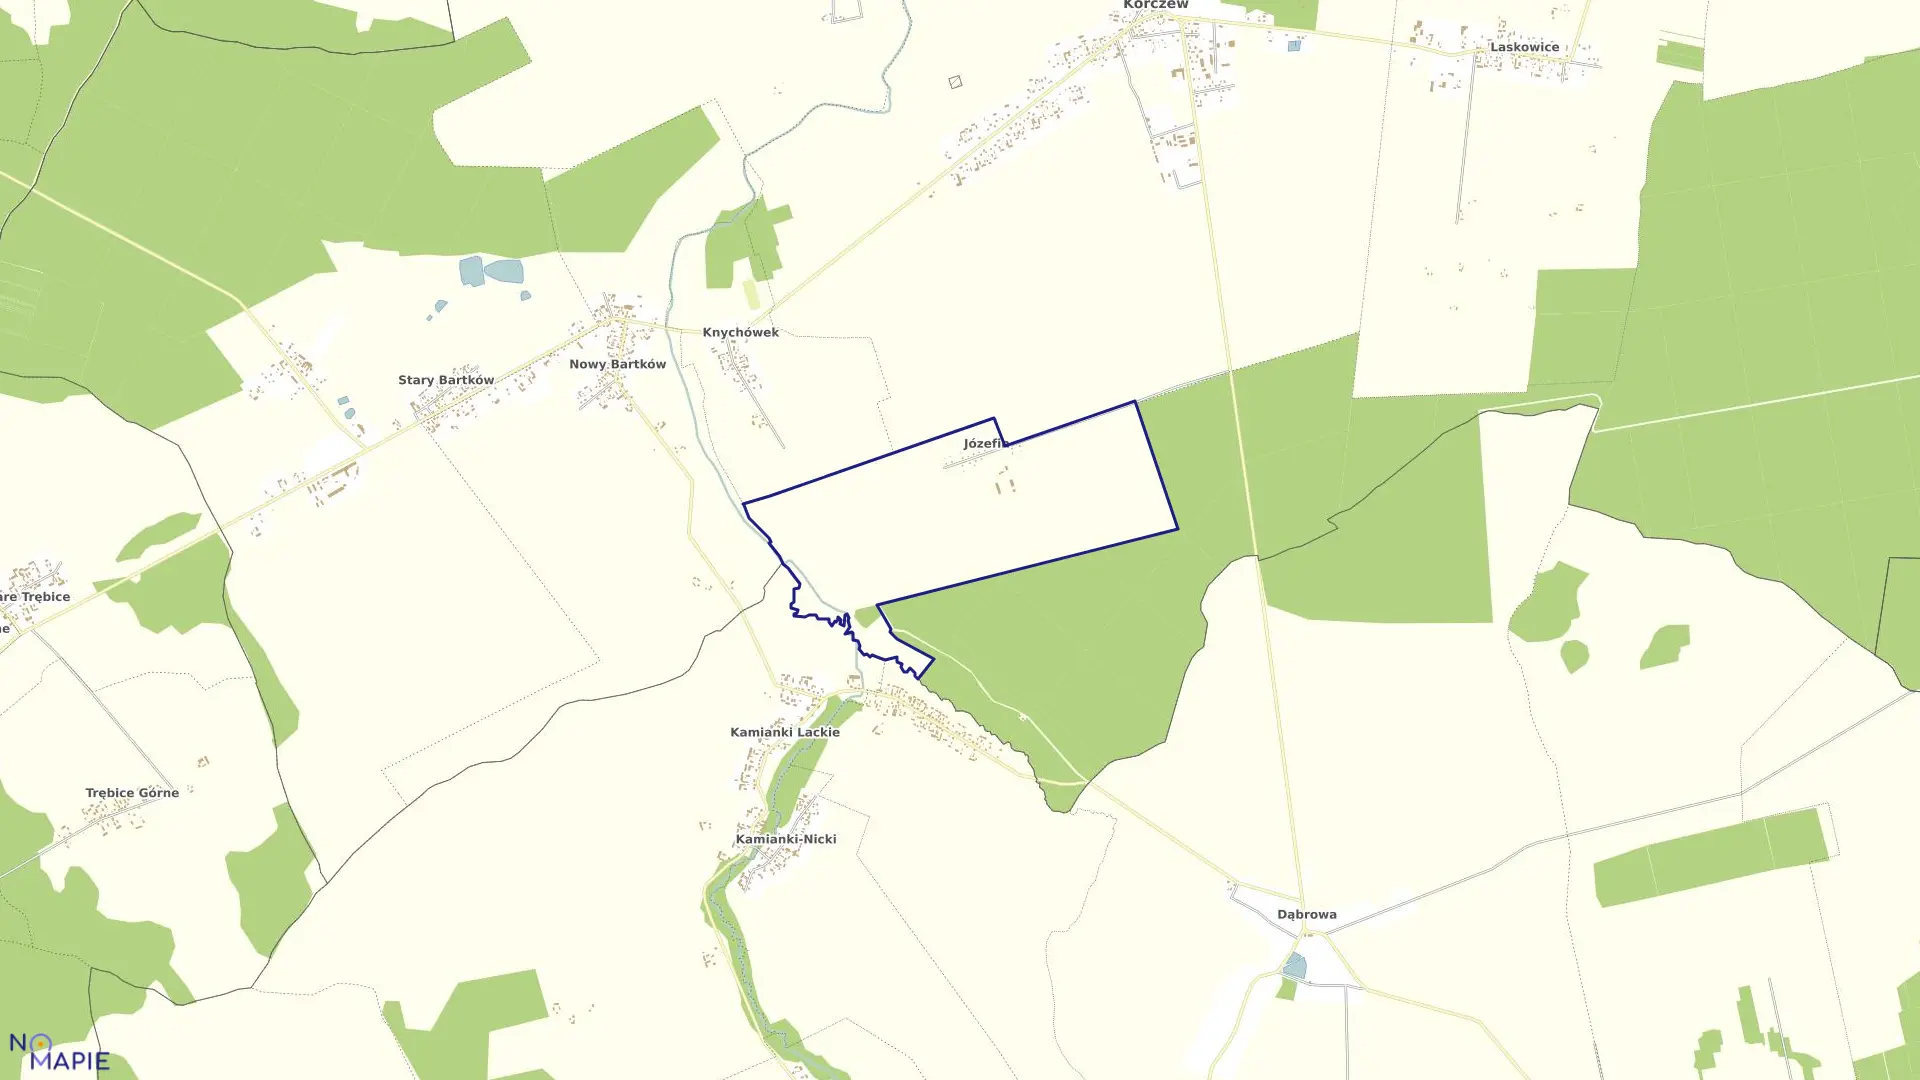 Mapa obrębu JÓZEFIN w gminie Korczew